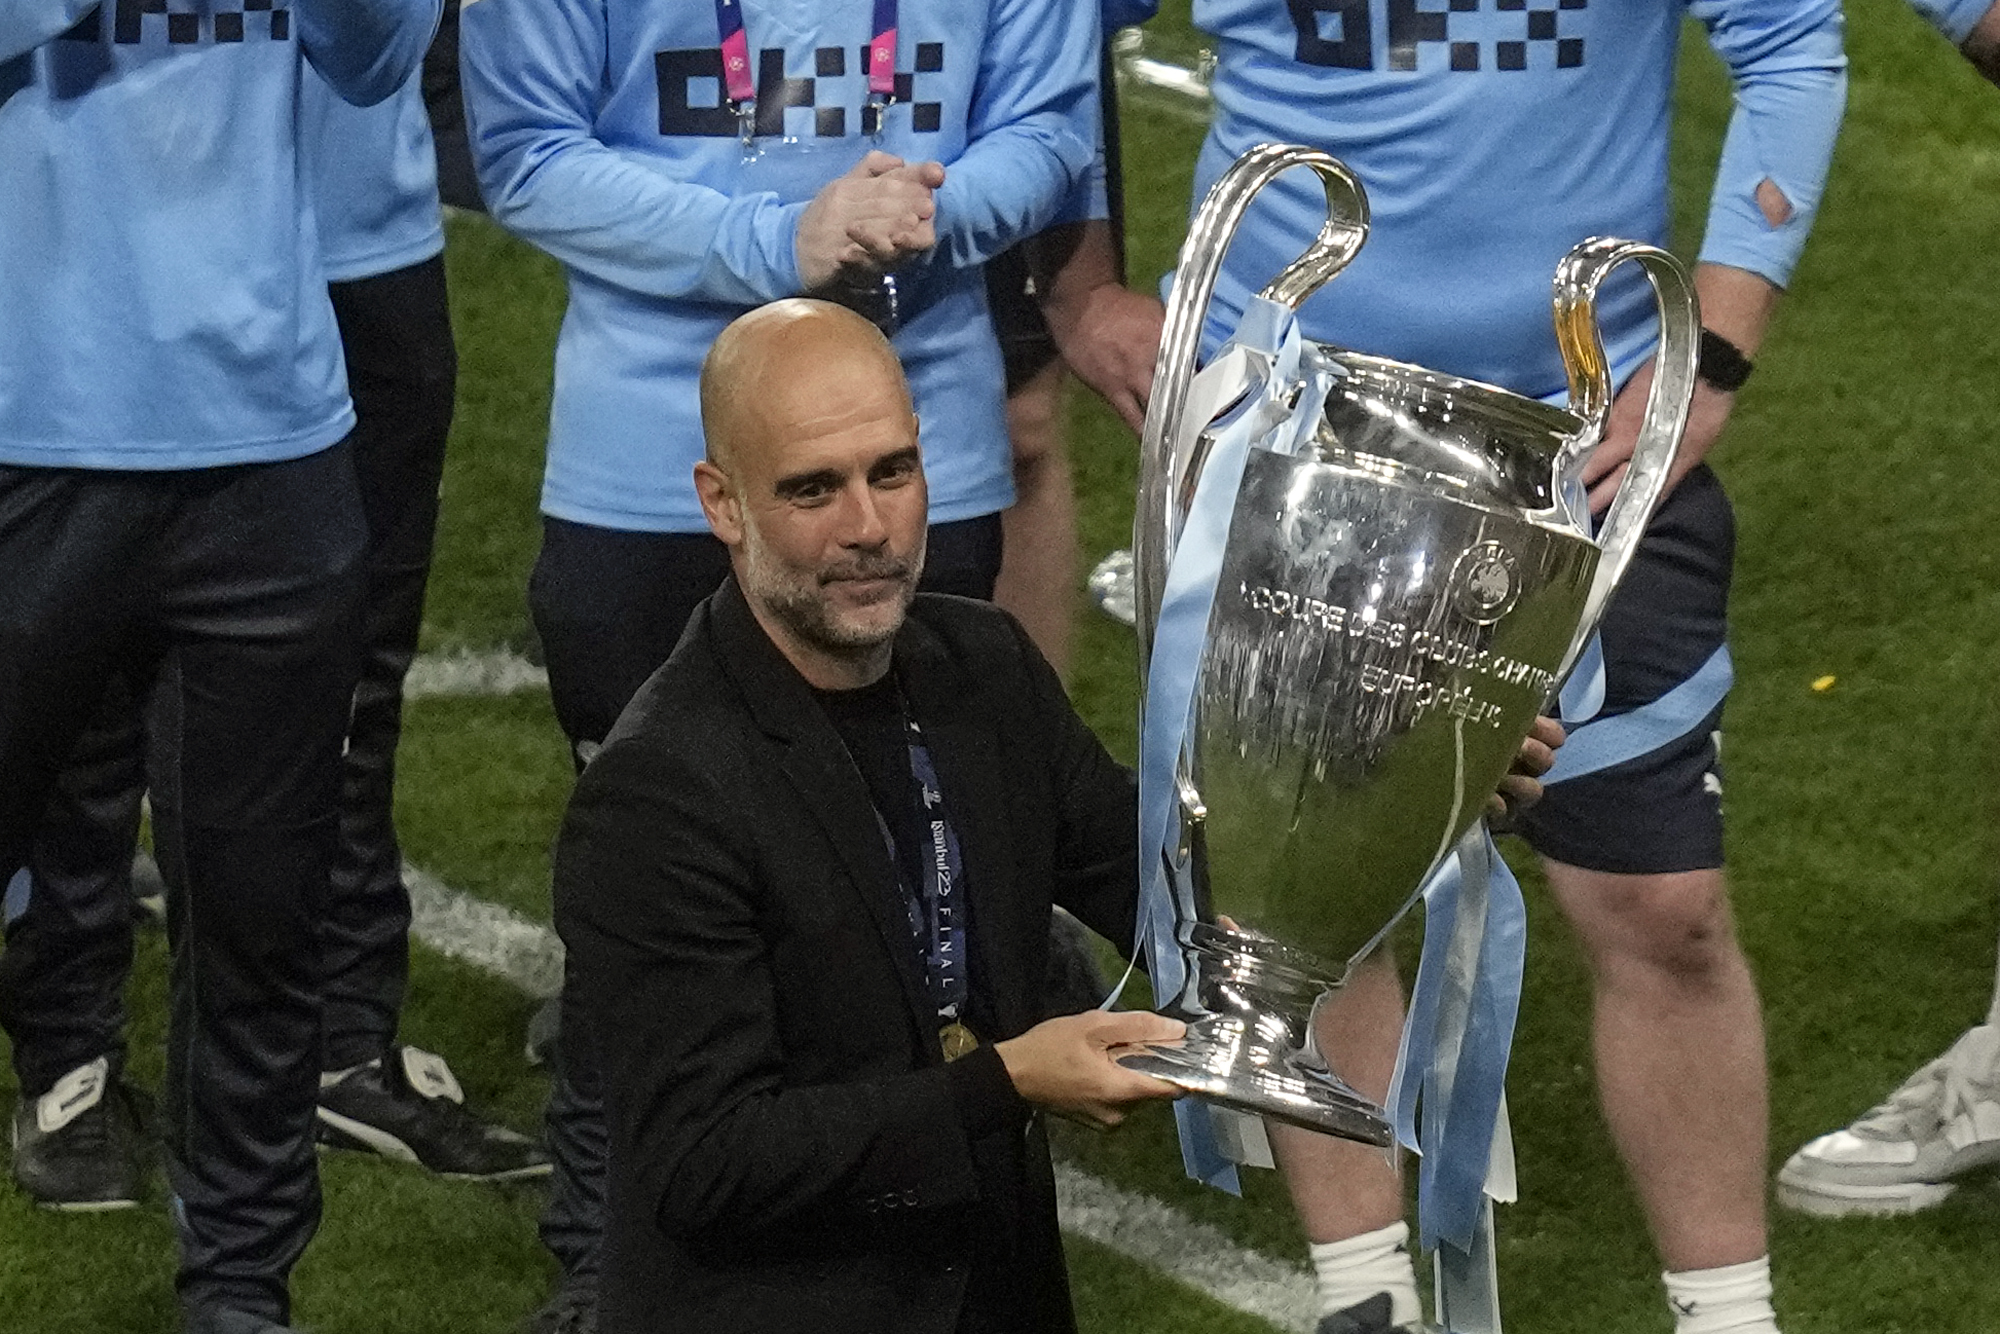 Champions League: Manchester City, el campeón pone en juego su 'corona': "No hemos conseguido nada especial"